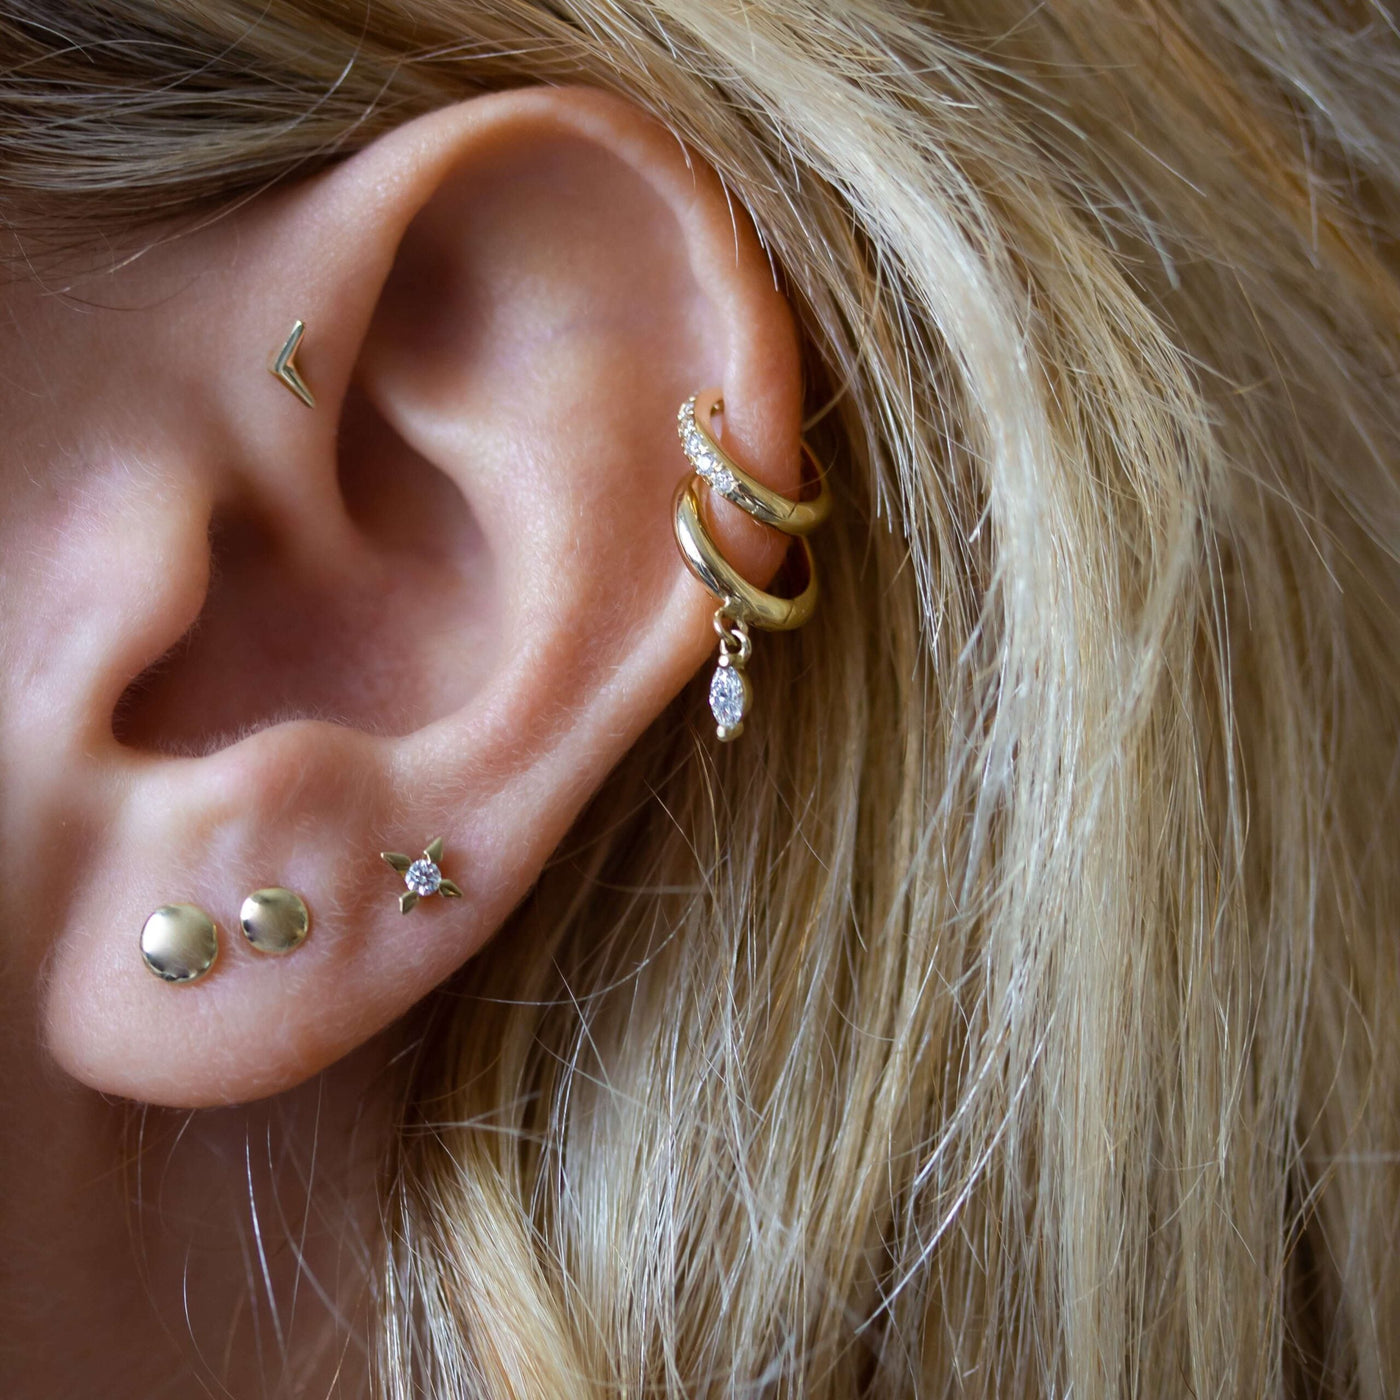 Star Vega Earring 14K Gold White Diamond Earrings 